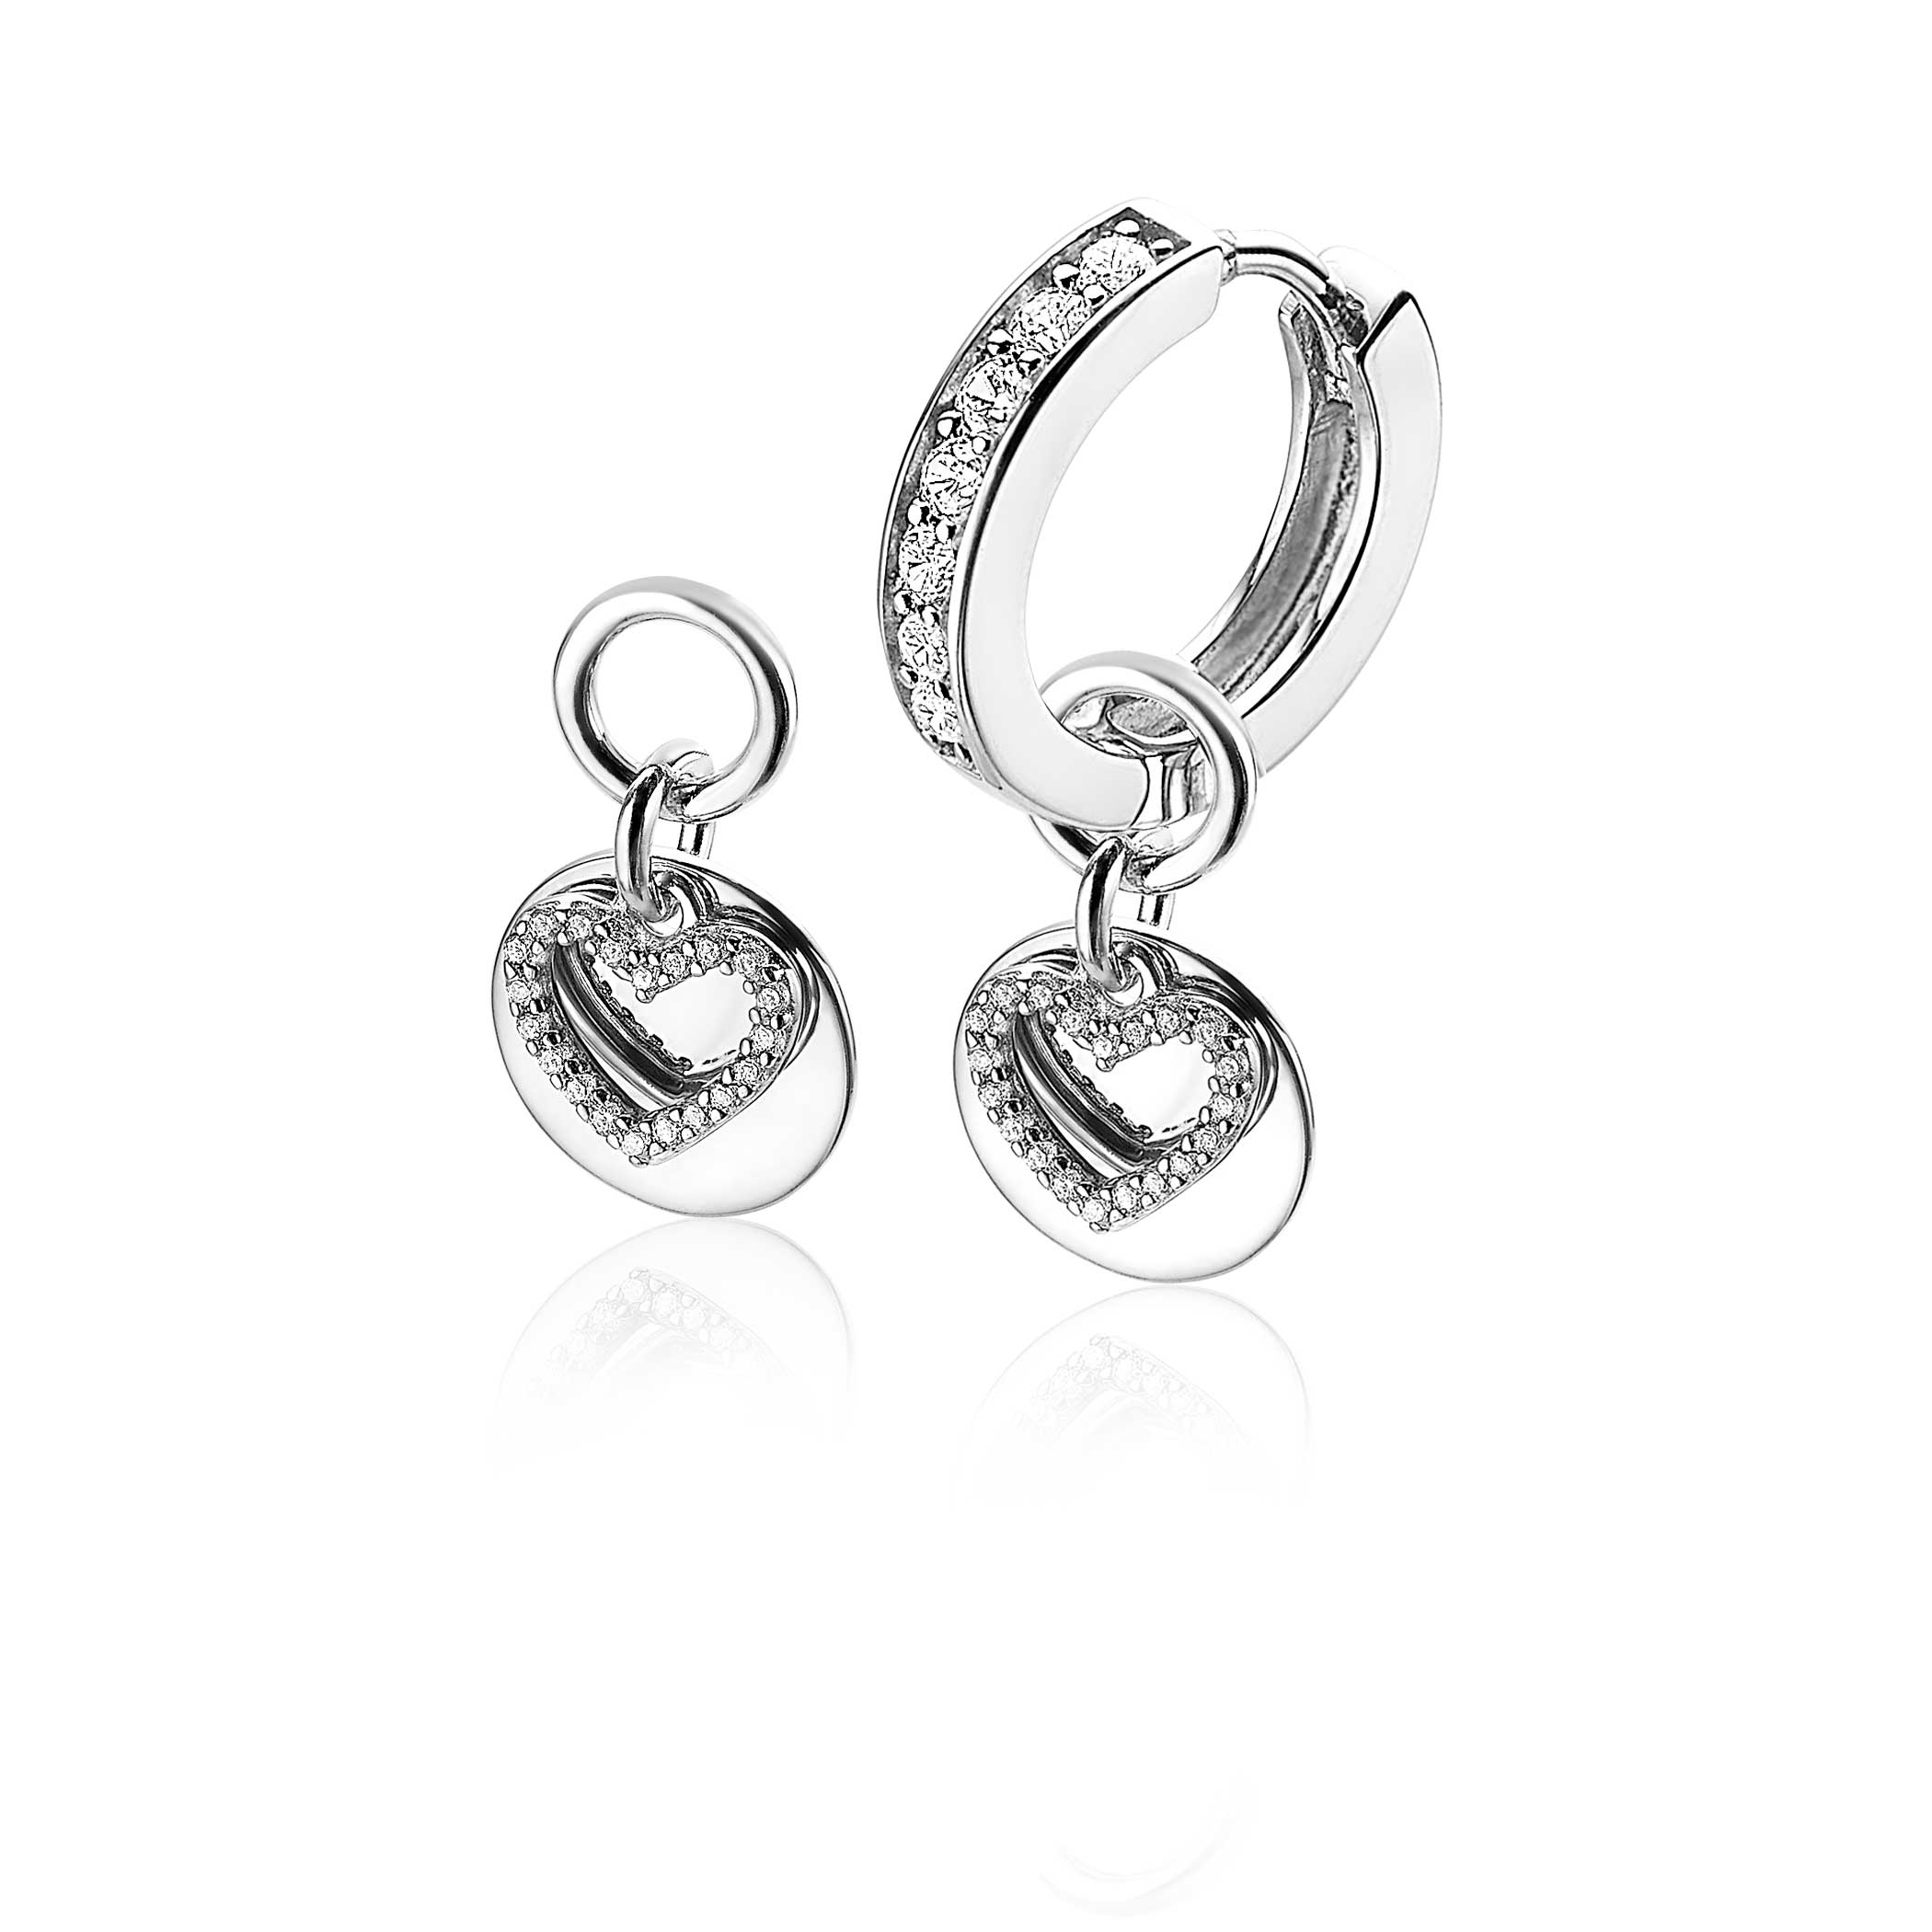 ZINZI Sterling Silver Earrings Pendants Double Heart ZICH1767 (excl. hoop earrings)